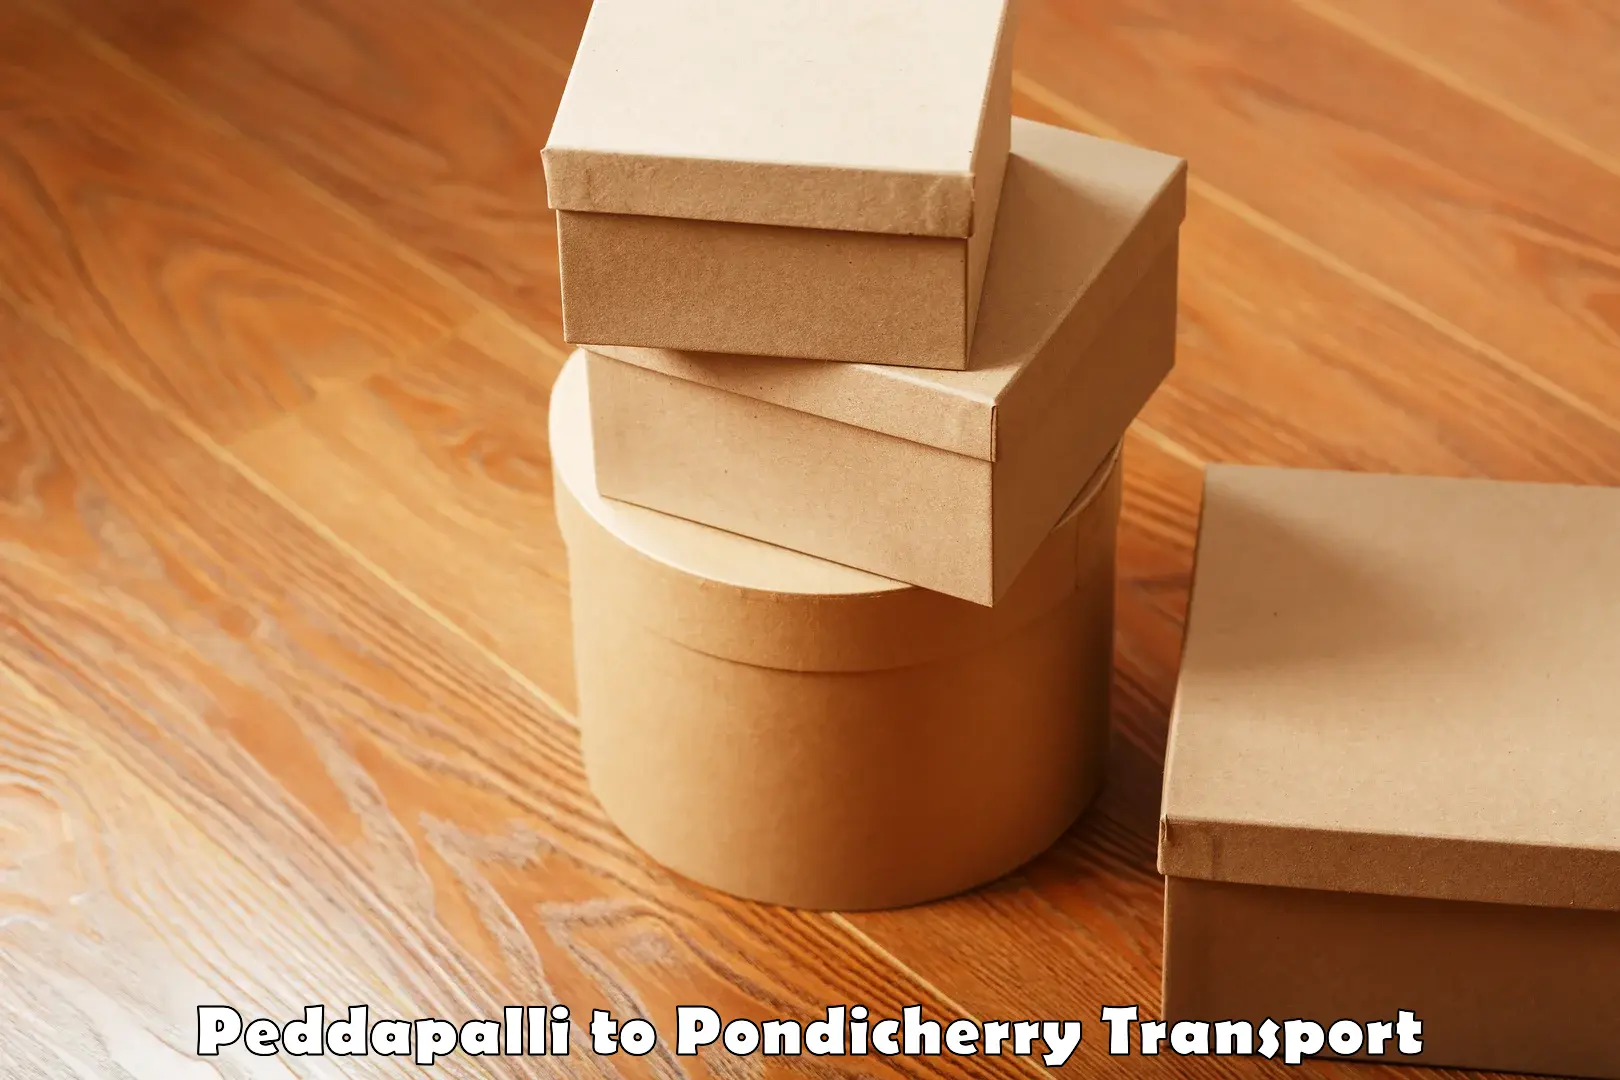 Transport shared services Peddapalli to Pondicherry